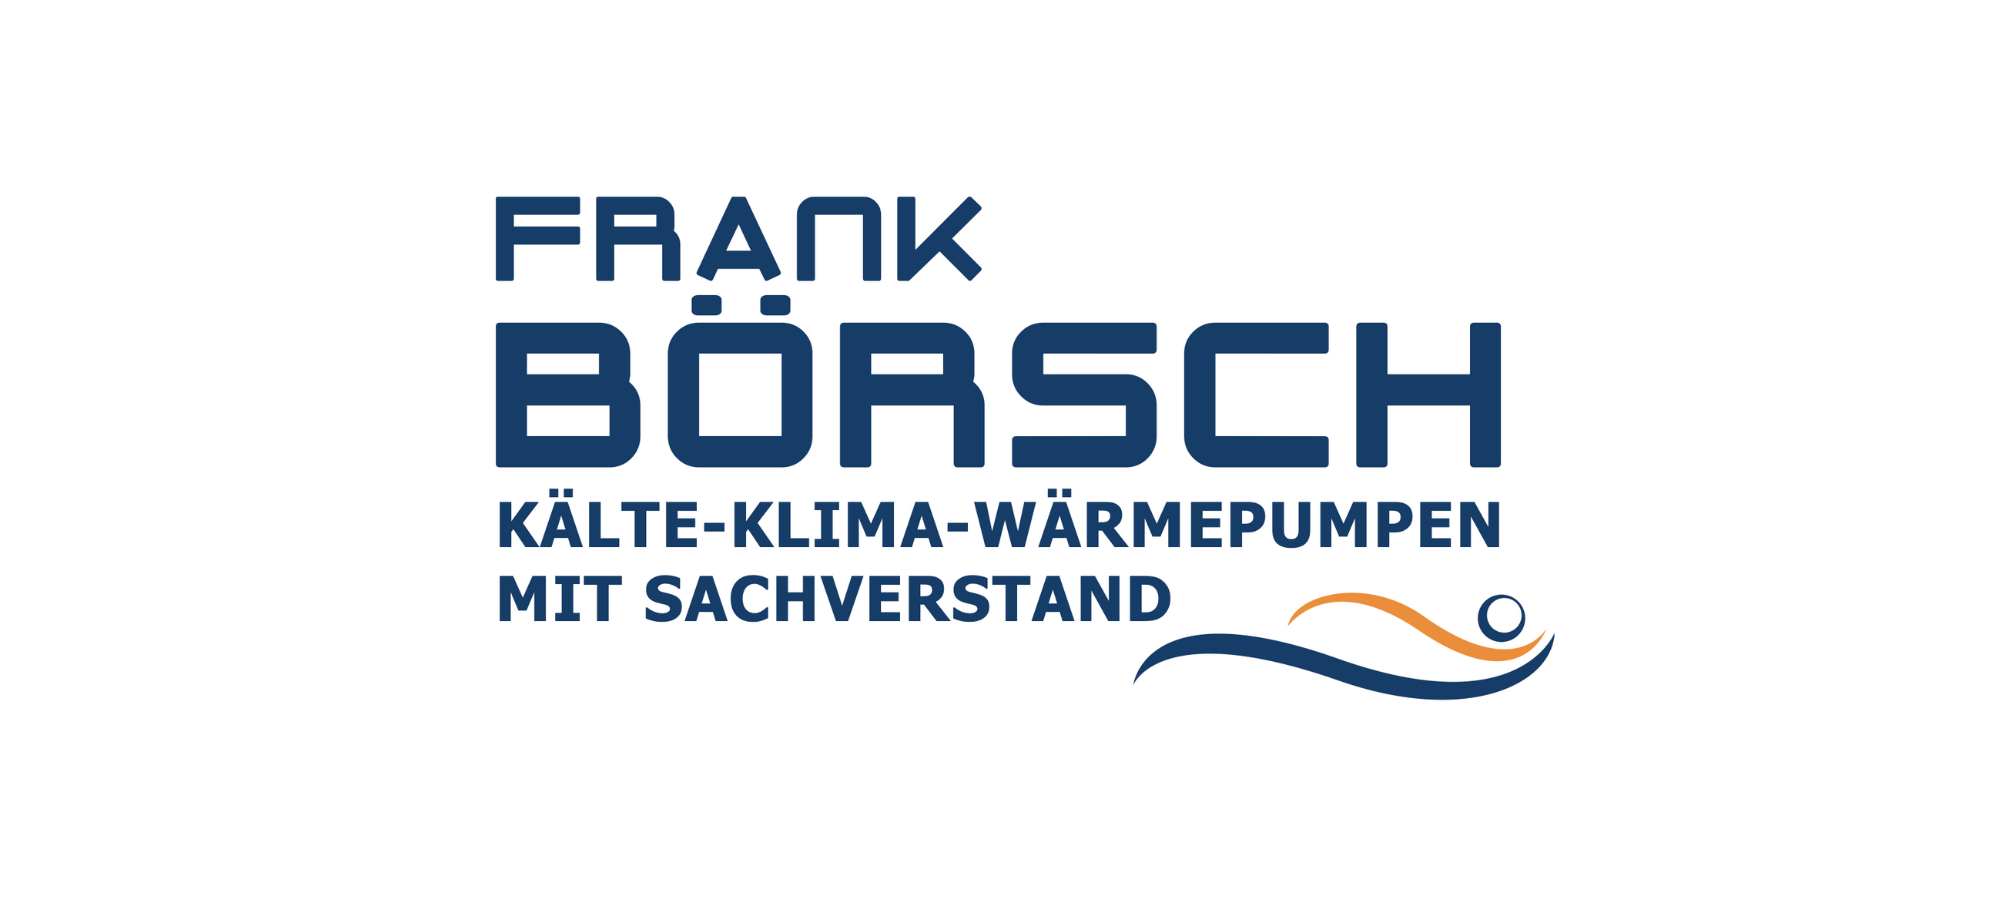 frank michael Börsch kälte Klima Wärmepumpen logo Nickenich koblenz